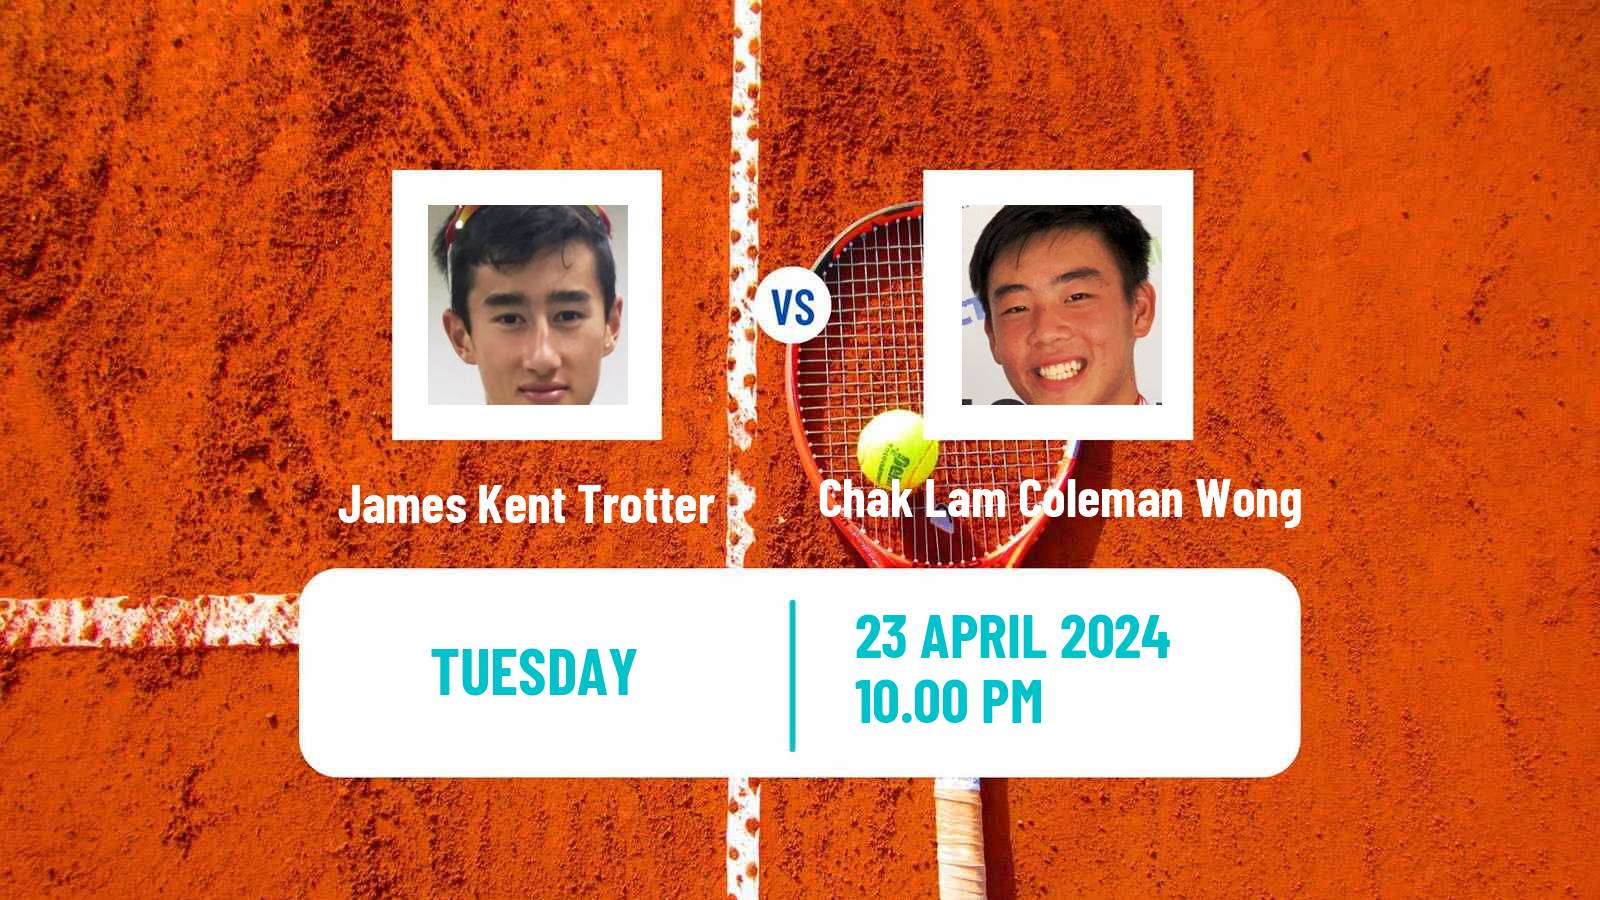 Tennis Shenzhen 3 Challenger Men James Kent Trotter - Chak Lam Coleman Wong